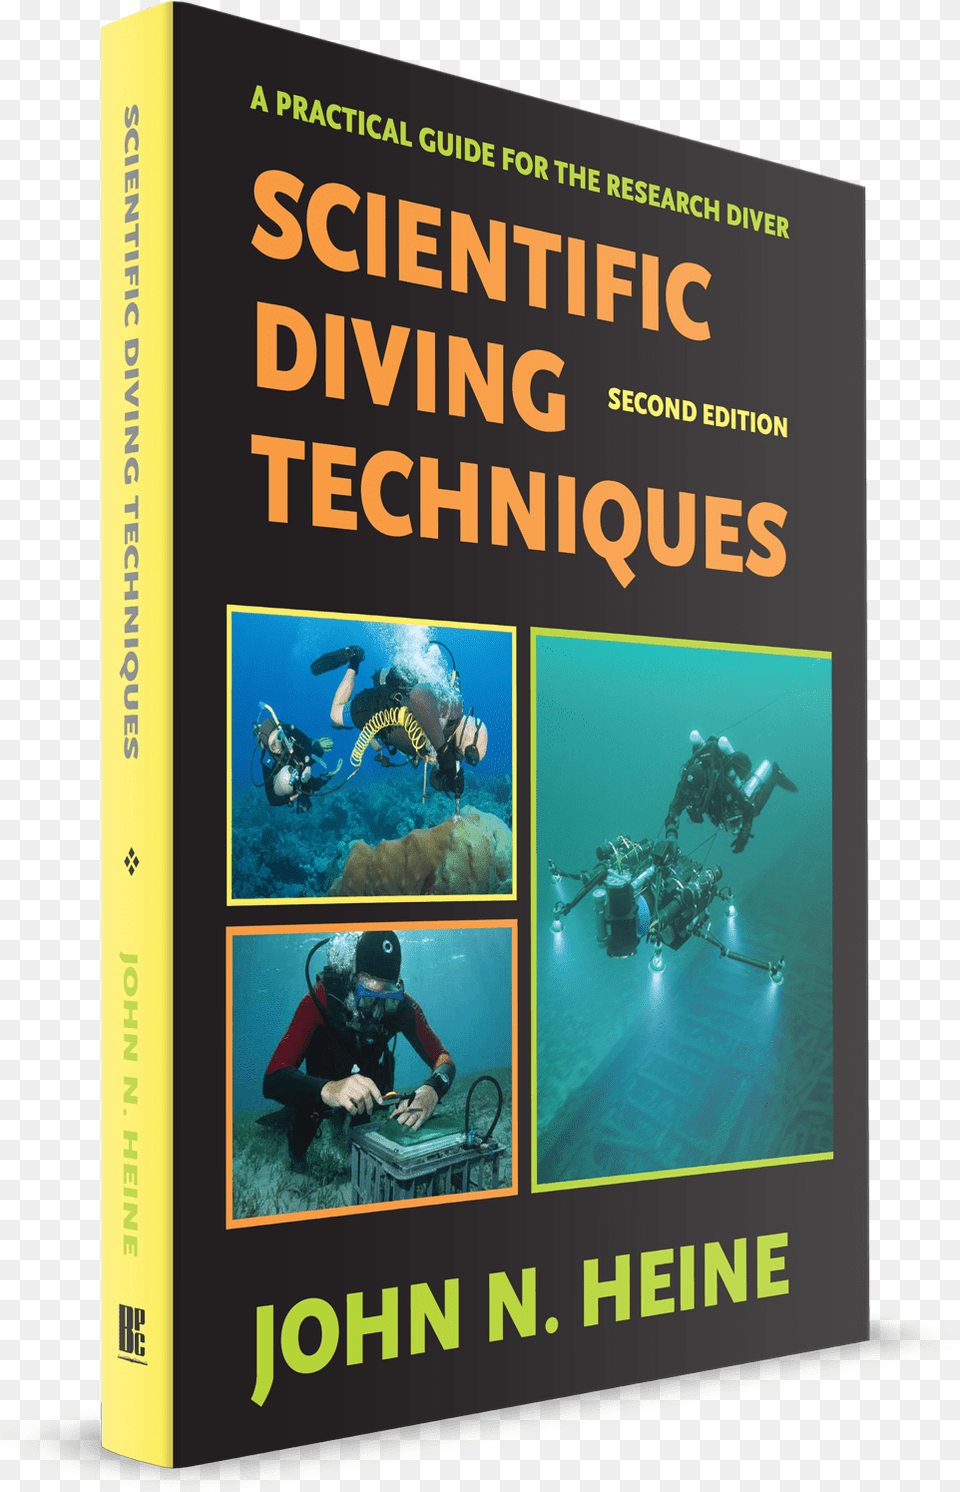 Scientific Diving Techniques, Water, Sport, Scuba Diving, Publication Free Png Download